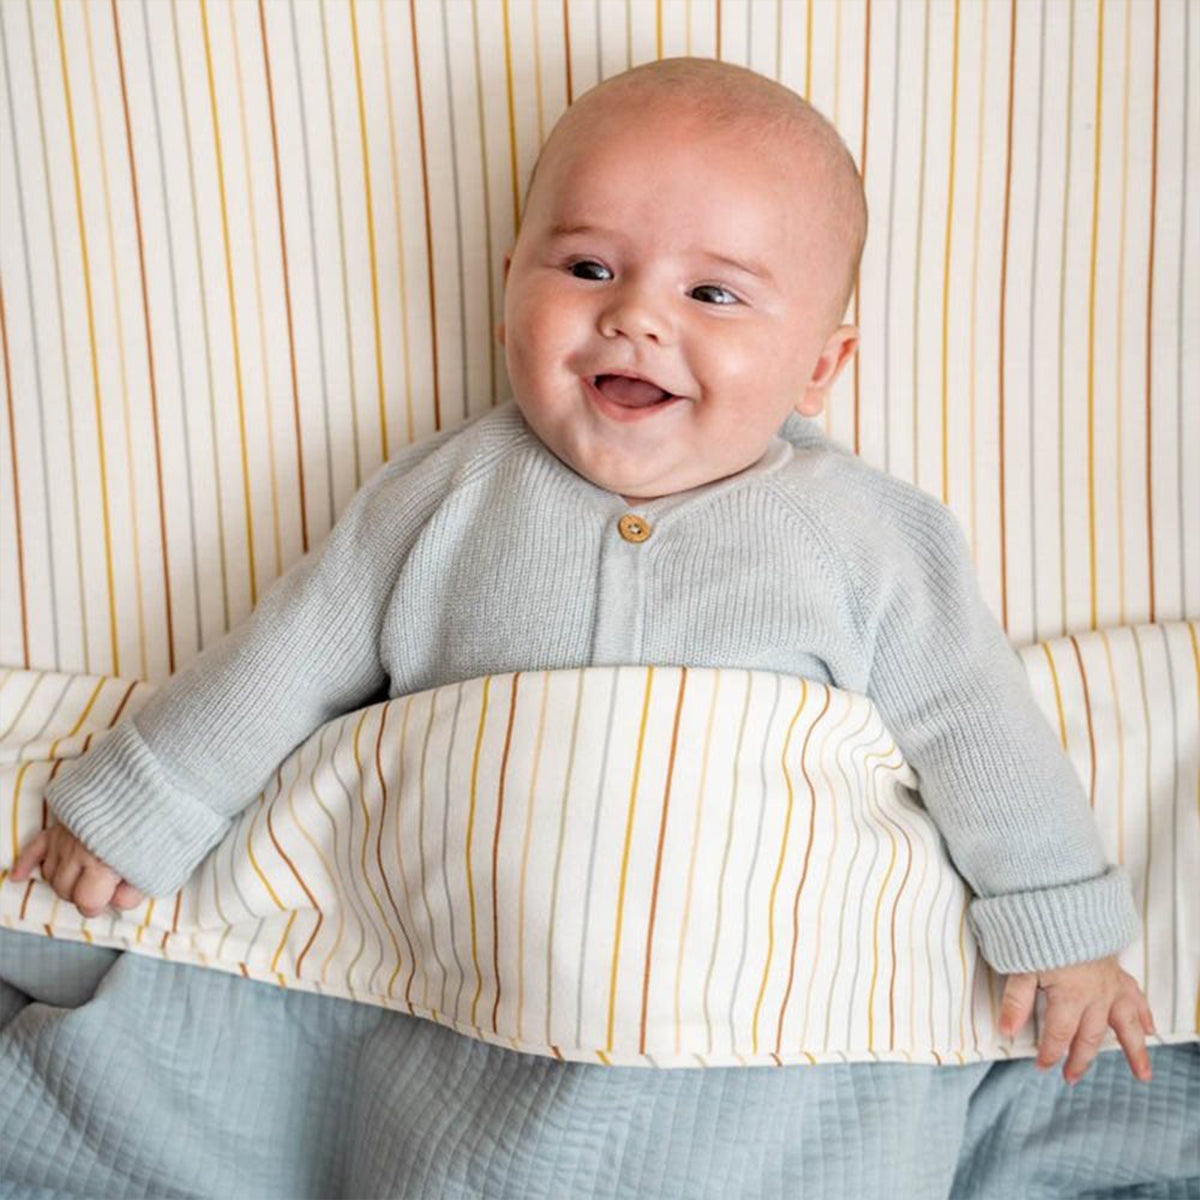 De ledikantdeken Pure soft blue van Little Dutch is multifunctioneel: gebruik het als deken, omslagdoek, sprei of speelkleed. De deken is warm en zacht. Ideaal voor jouw kindje. VanZus